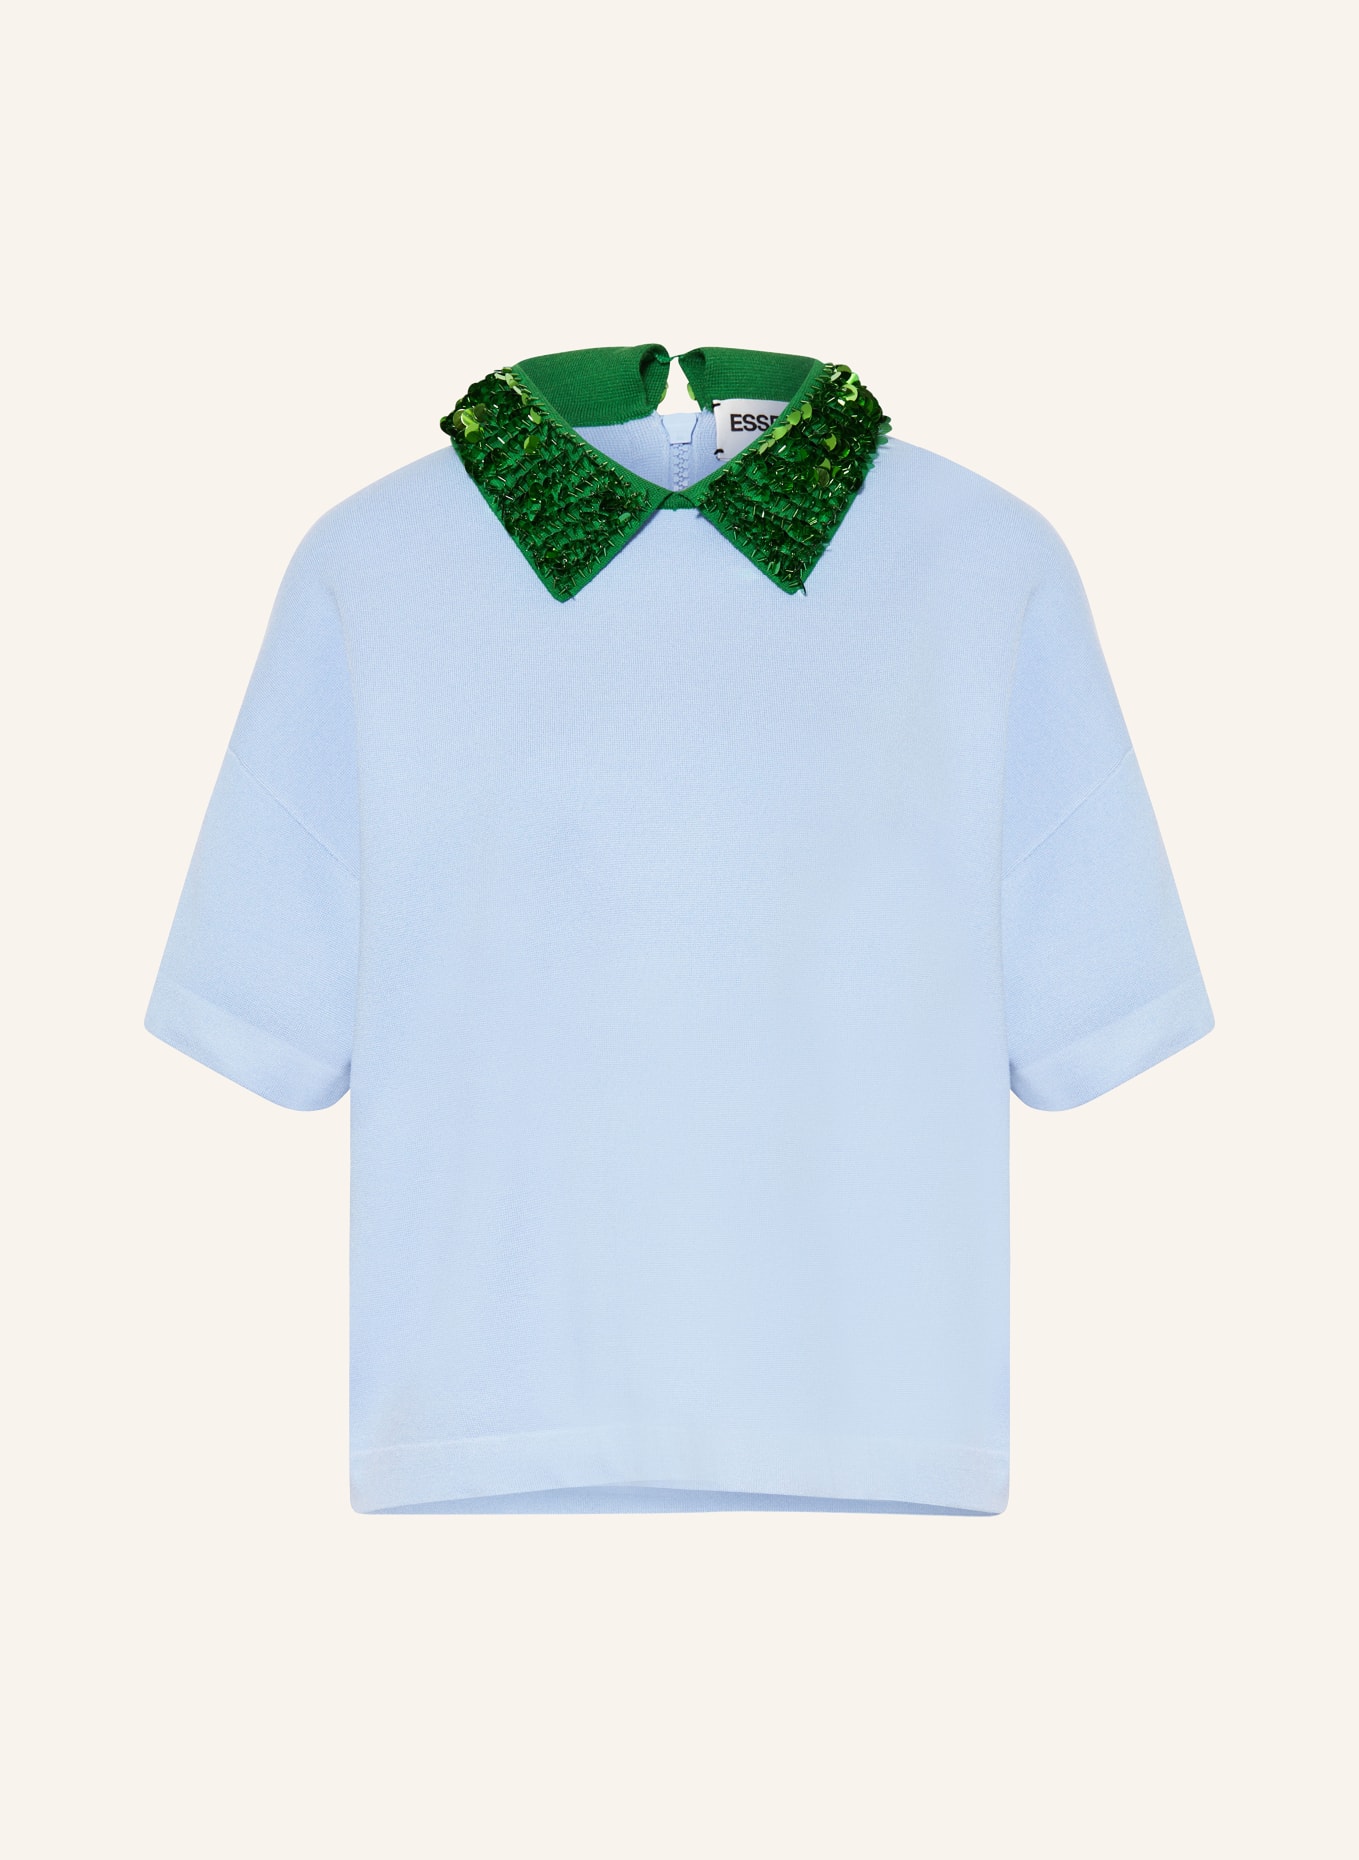 ESSENTIEL ANTWERP T-Shirt FILANO mit Pailletten und Schmuckperlen, Farbe: HELLBLAU/ GRÜN (Bild 1)